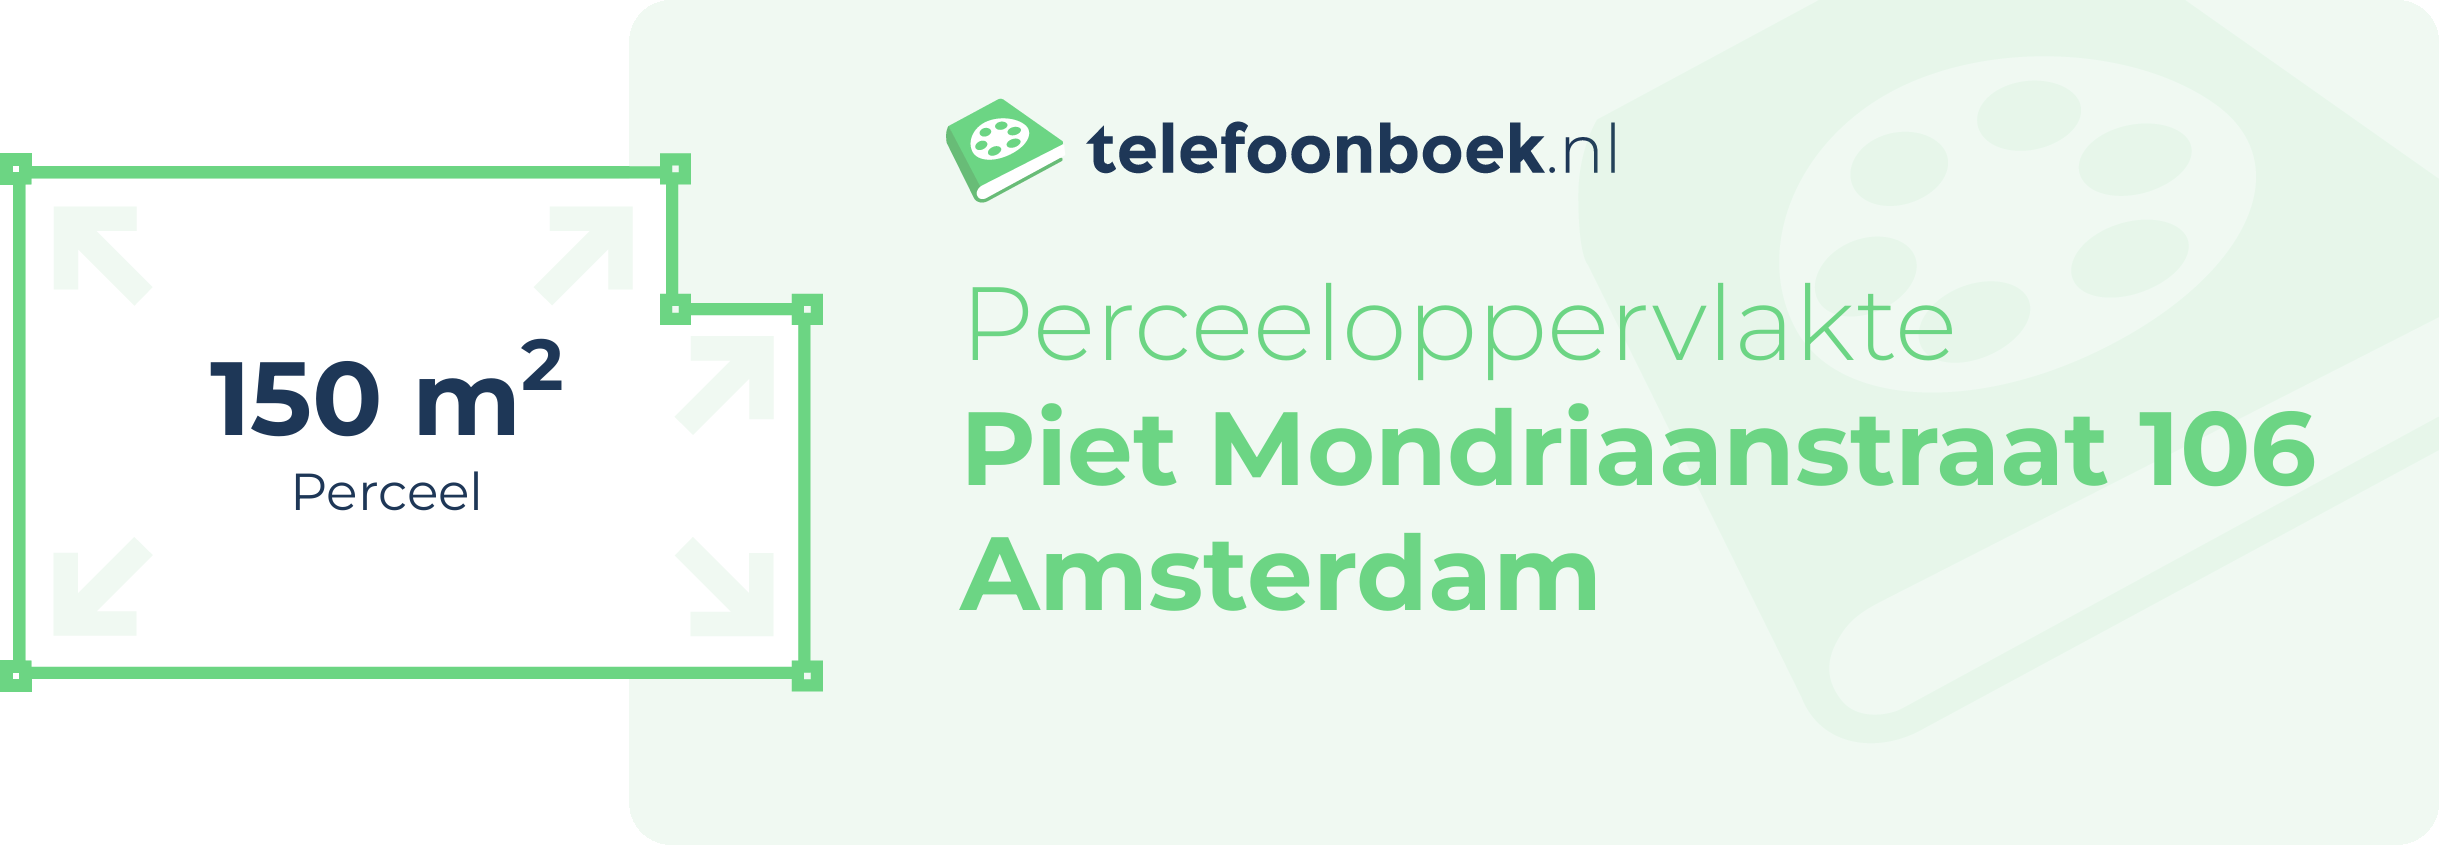 Perceeloppervlakte Piet Mondriaanstraat 106 Amsterdam